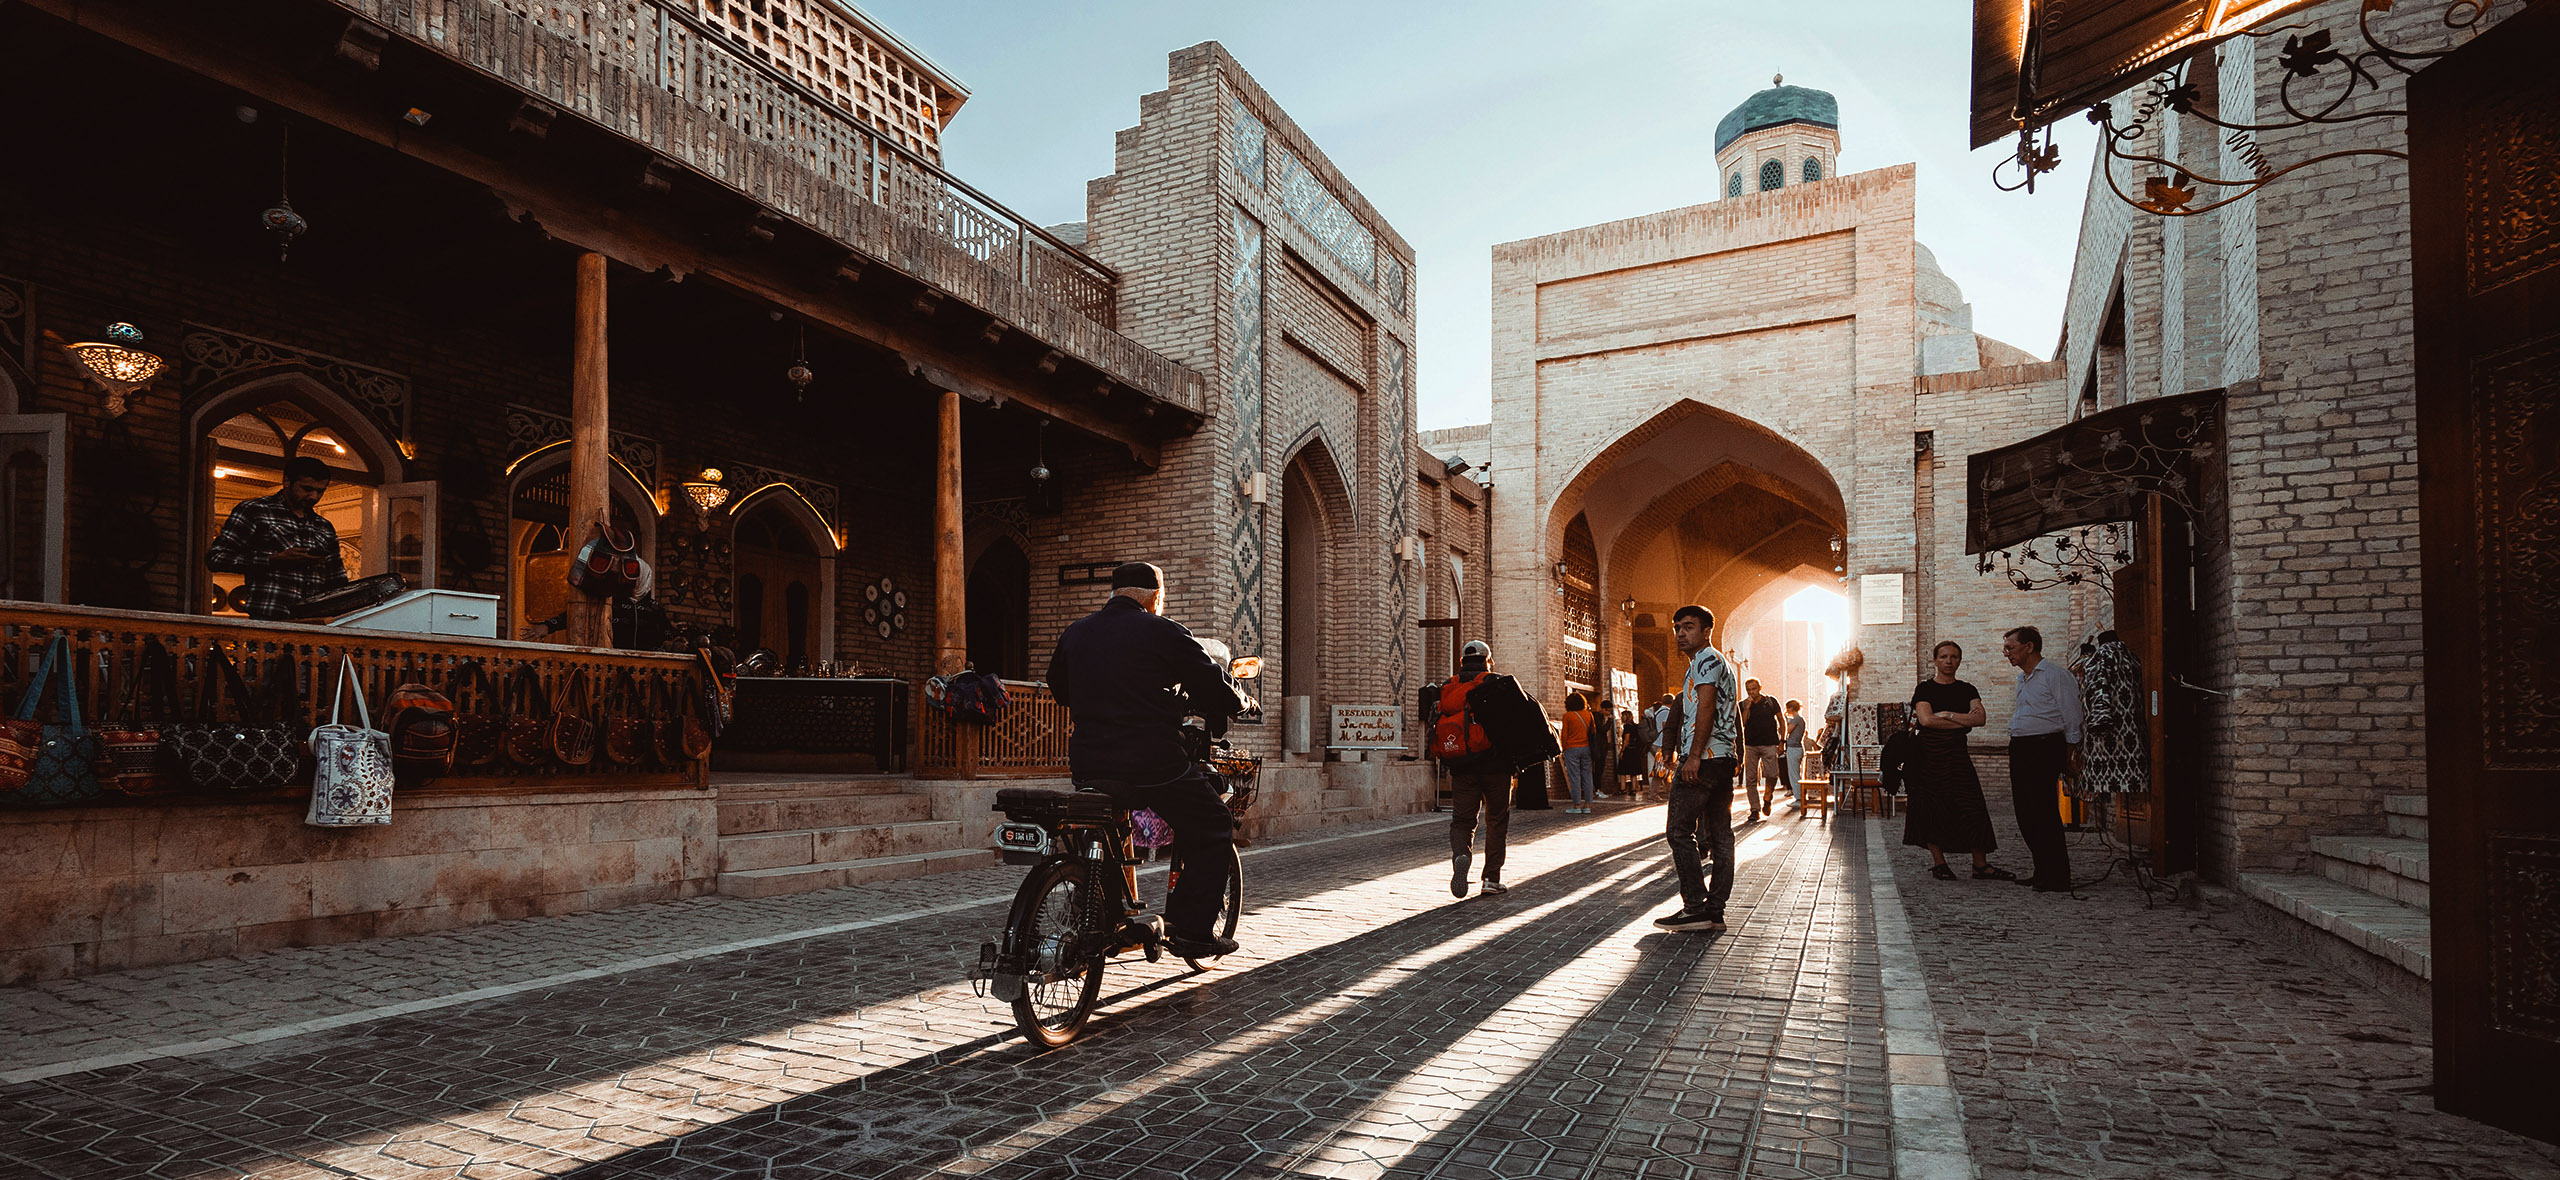 Узбекистан: что нужно знать перед поездкой